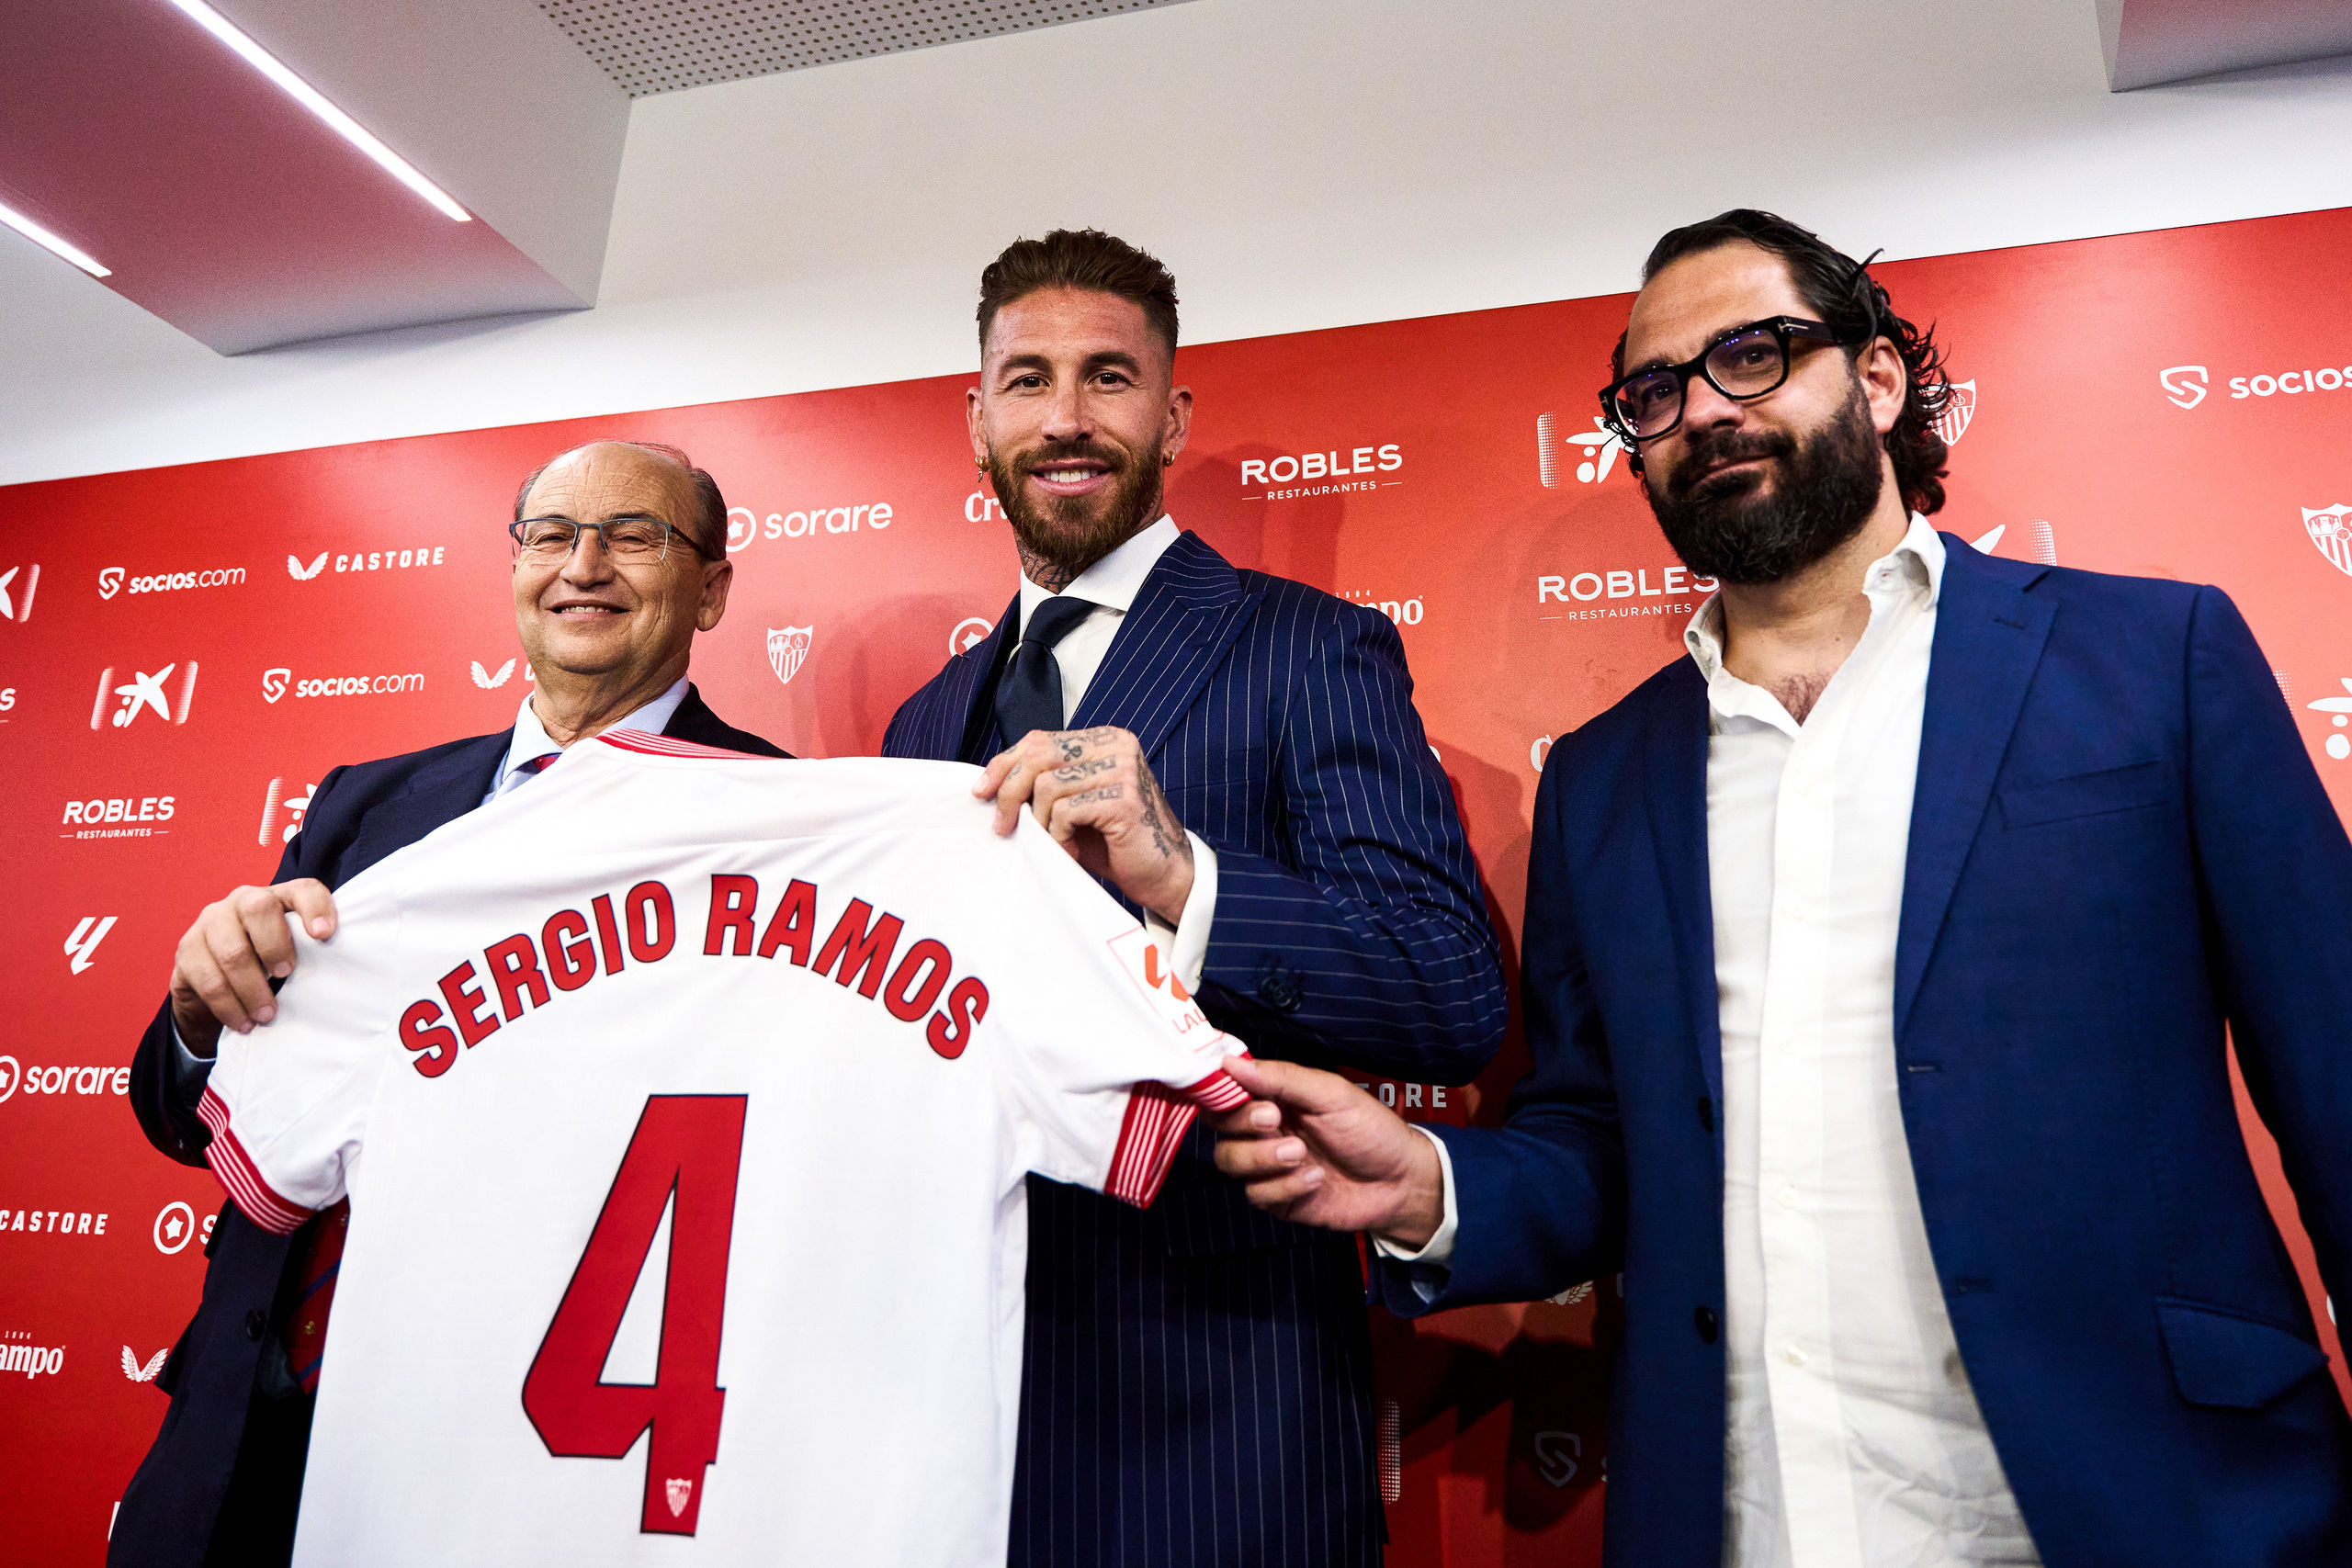 Sergio Ramos a los Biris: "Demasiados enemigos tenemos fuera como para pelearnos nosotros"